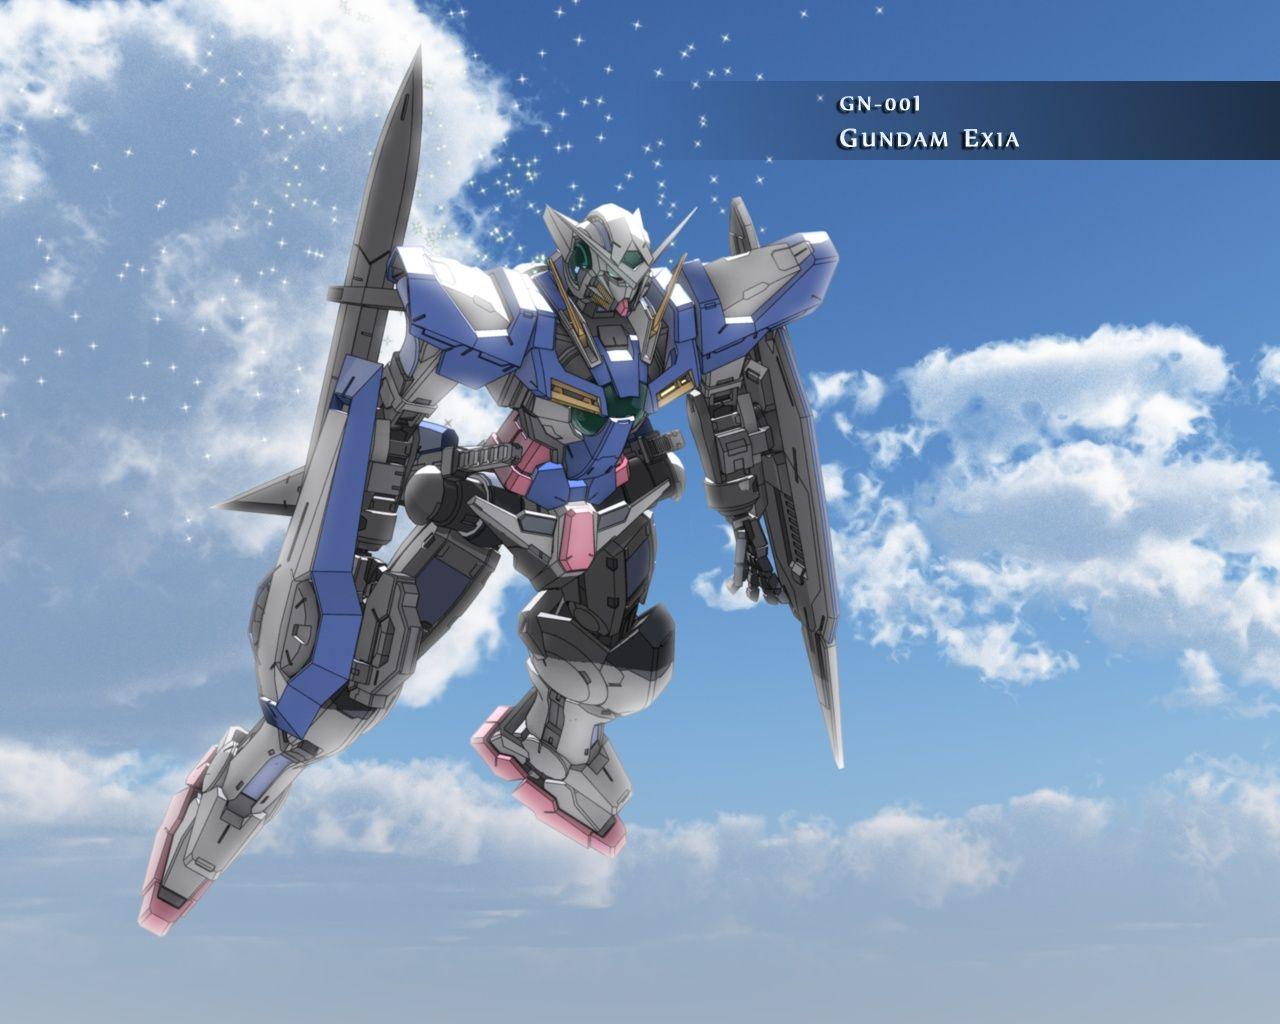 GN 001 Gundam Exia Sky